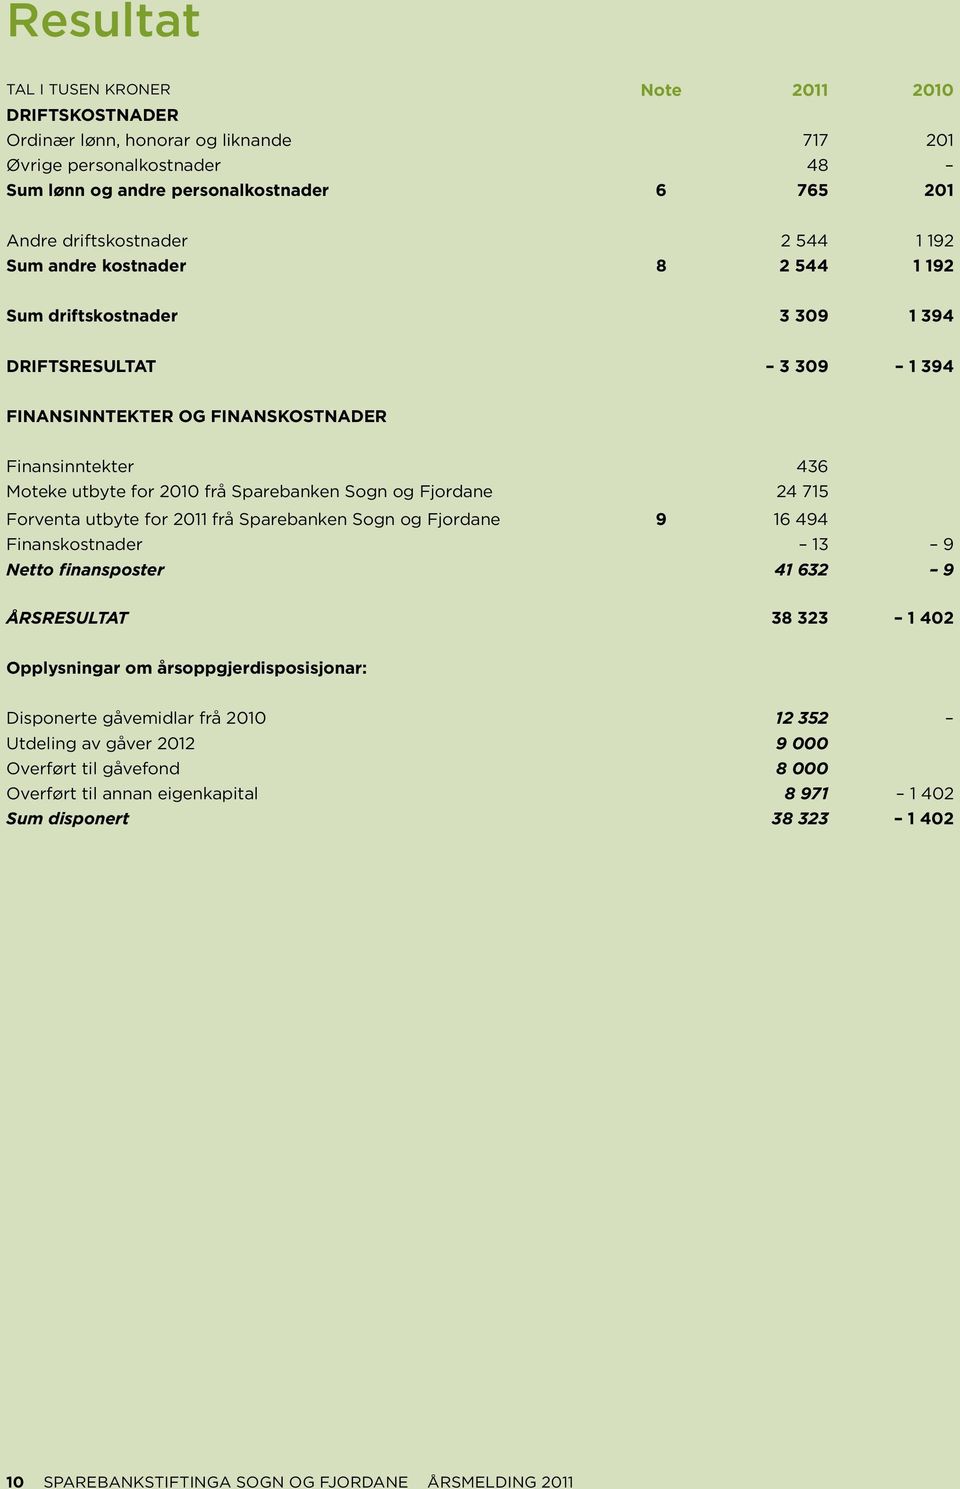 Sogn og Fjordane 24 715 Forventa utbyte for 2011 frå Sparebanken Sogn og Fjordane 9 16 494 Finanskostnader 13 9 Netto finansposter 41 632 9 ÅRSRESULTAT 38 323 1 402 Opplysningar om